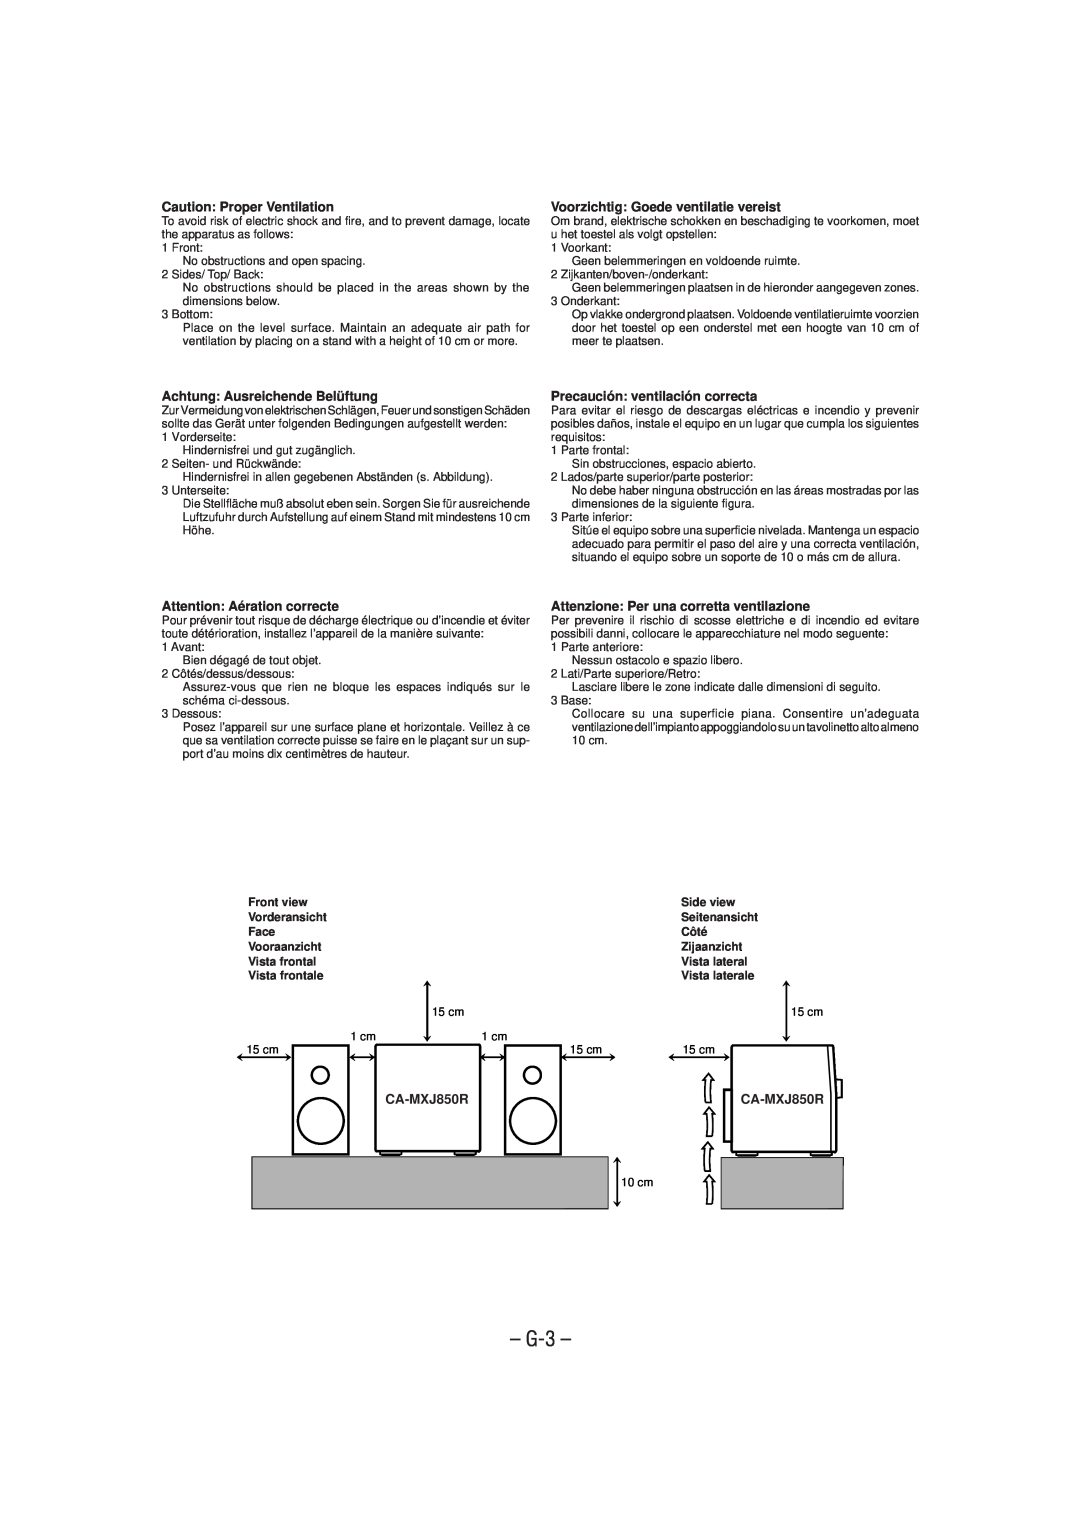 JVC CA-MXJ850R manual G-3, Caution Proper Ventilation, Voorzichtig Goede ventilatie vereist, Achtung Ausreichende Belüftung 